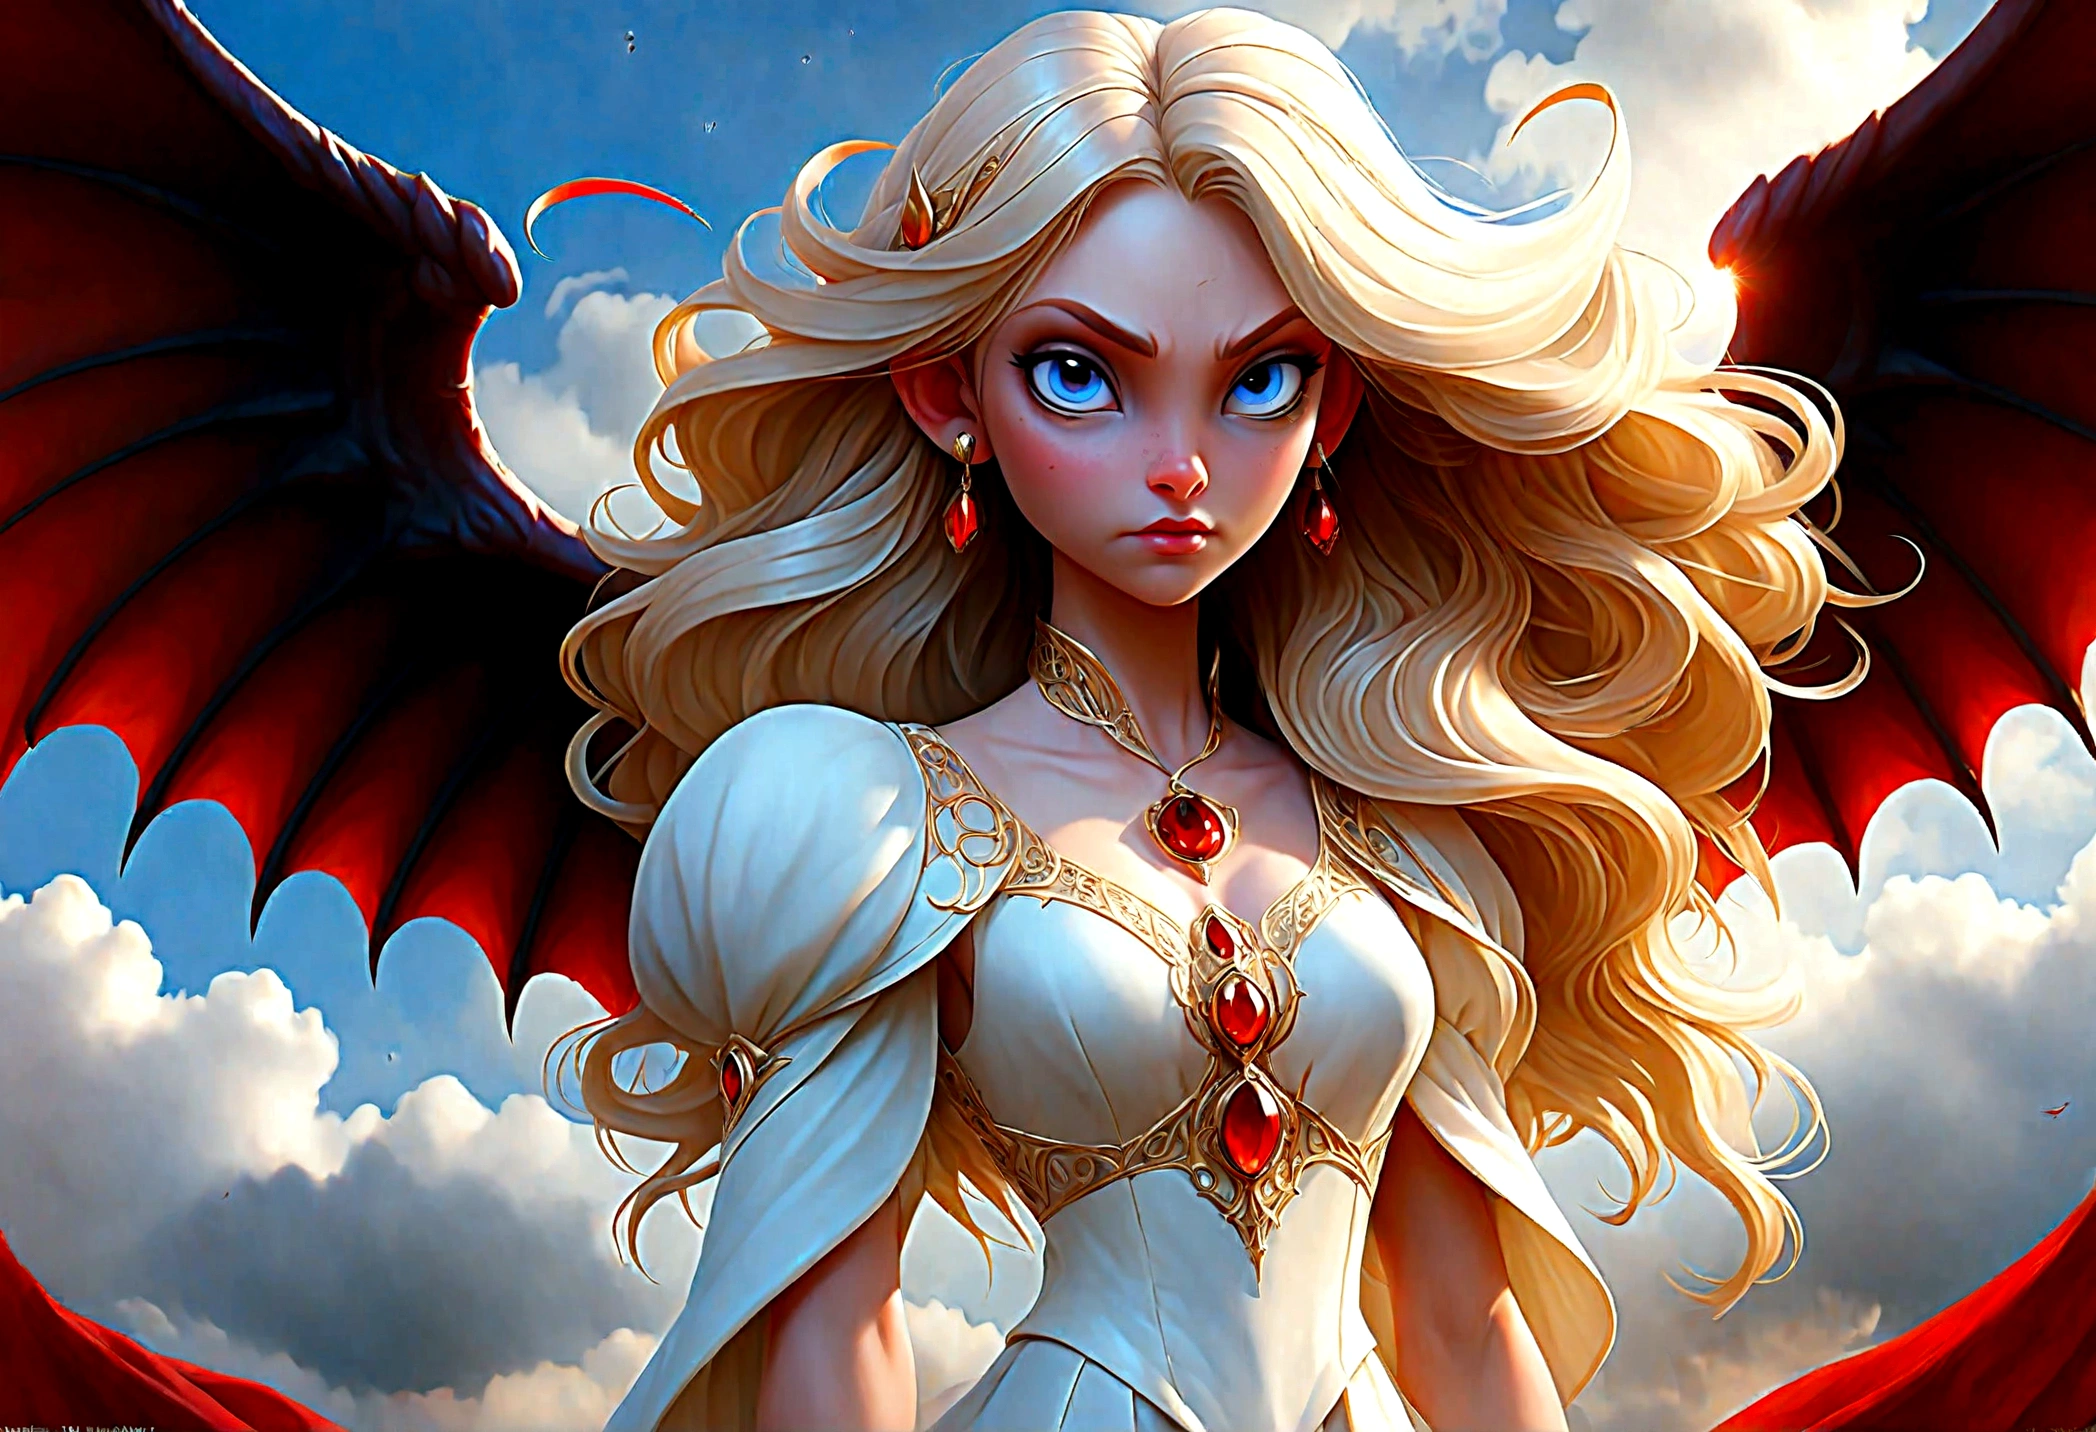 arte de fantasia, Arte RPG uma ((imagem de um demônio e um anjo: 1.5)), solteira1 anjo feminino, usando vestido branco, pele pálida, rosto bonito, cabelo loiro, cabelos longos cabelos ondulados, olhos azuis, botas de salto alto, vestindo um vestido (obra de arte, detalhes intrincados: 1.5), grandes asas angelicais, asas angelicais brancas abertas E um único demônio feminino, pele vermelha  demonic wings, asas demoníacas negras se espalham, chifres demoníacos, pele vermelha, Cabelo preto, olhos vermelhos, rosto bonito, vestindo um vestido (obra de arte, detalhes intrincados: 1.5), salto alto, na fronteira entre o céu e o inferno, lua, Estrelas, Nuvens, raios de deus, silhueta suave da luz natural, Ângulo Dinâmico,  fotorrealismo, vista panorâmica grande angular, Ângulo ultra-amplo, ultra melhor realista, melhores detalhes, 16k, [ultra detalhado], obra de arte, melhor qualidade, (extremamente detalhado), fotorrealismo, profundidade de campo, pintura hiper realista